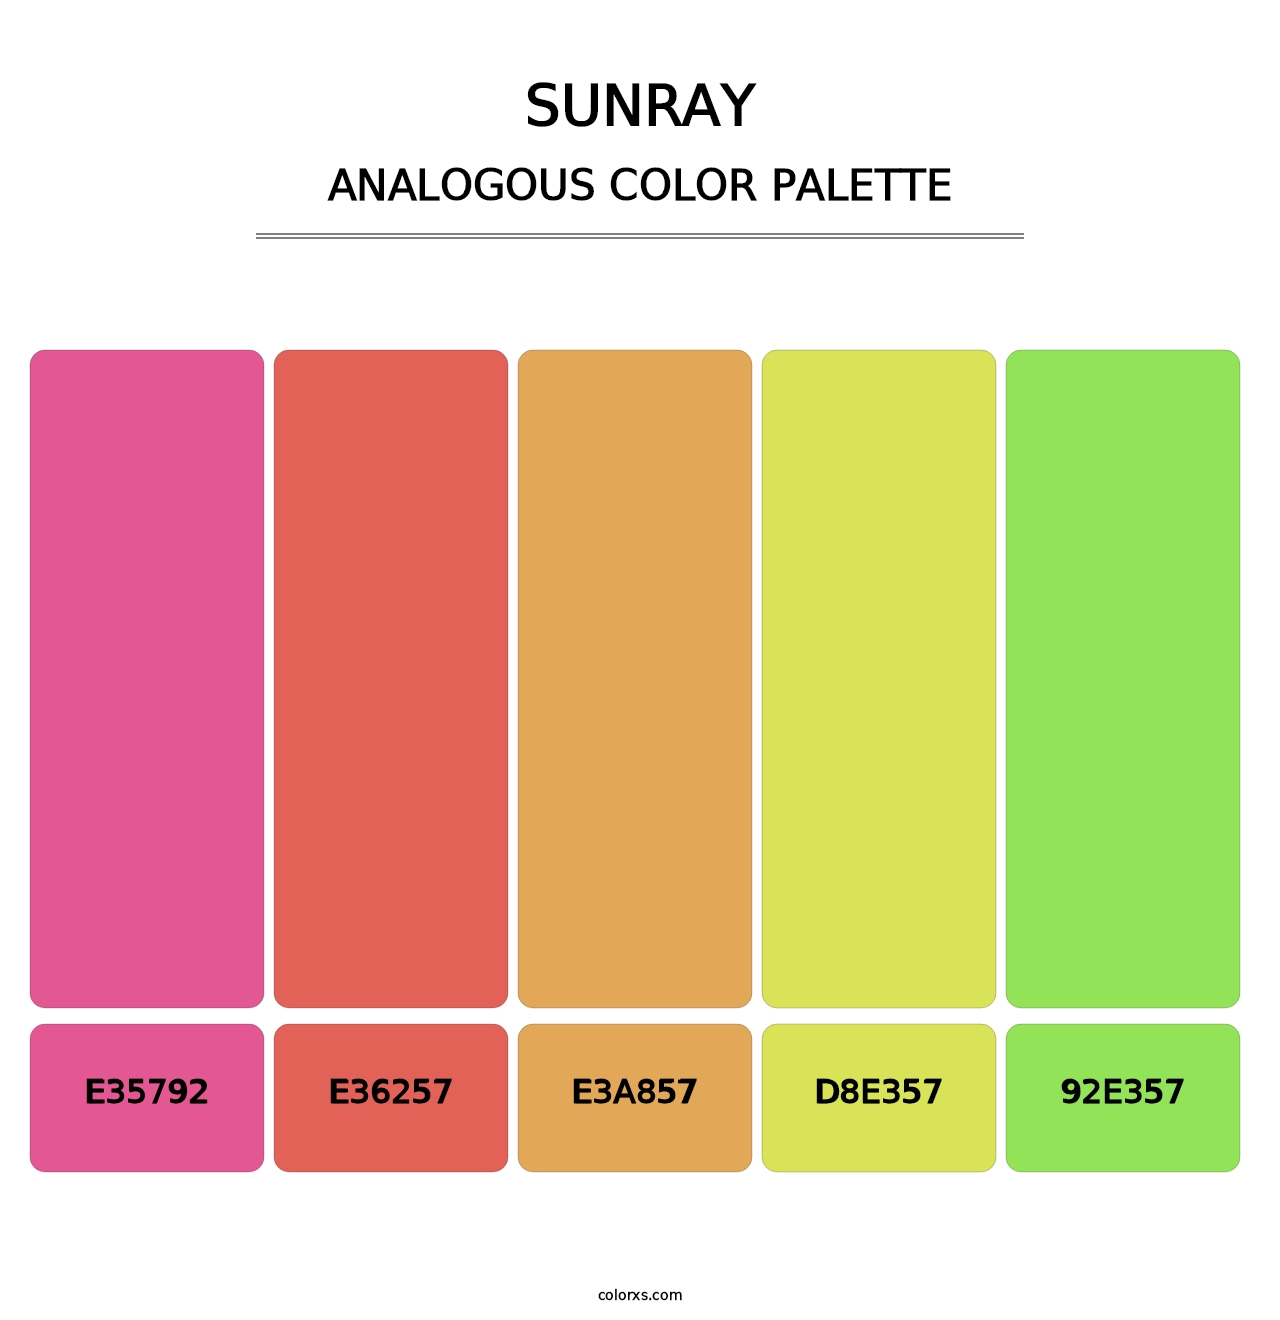 Sunray - Analogous Color Palette